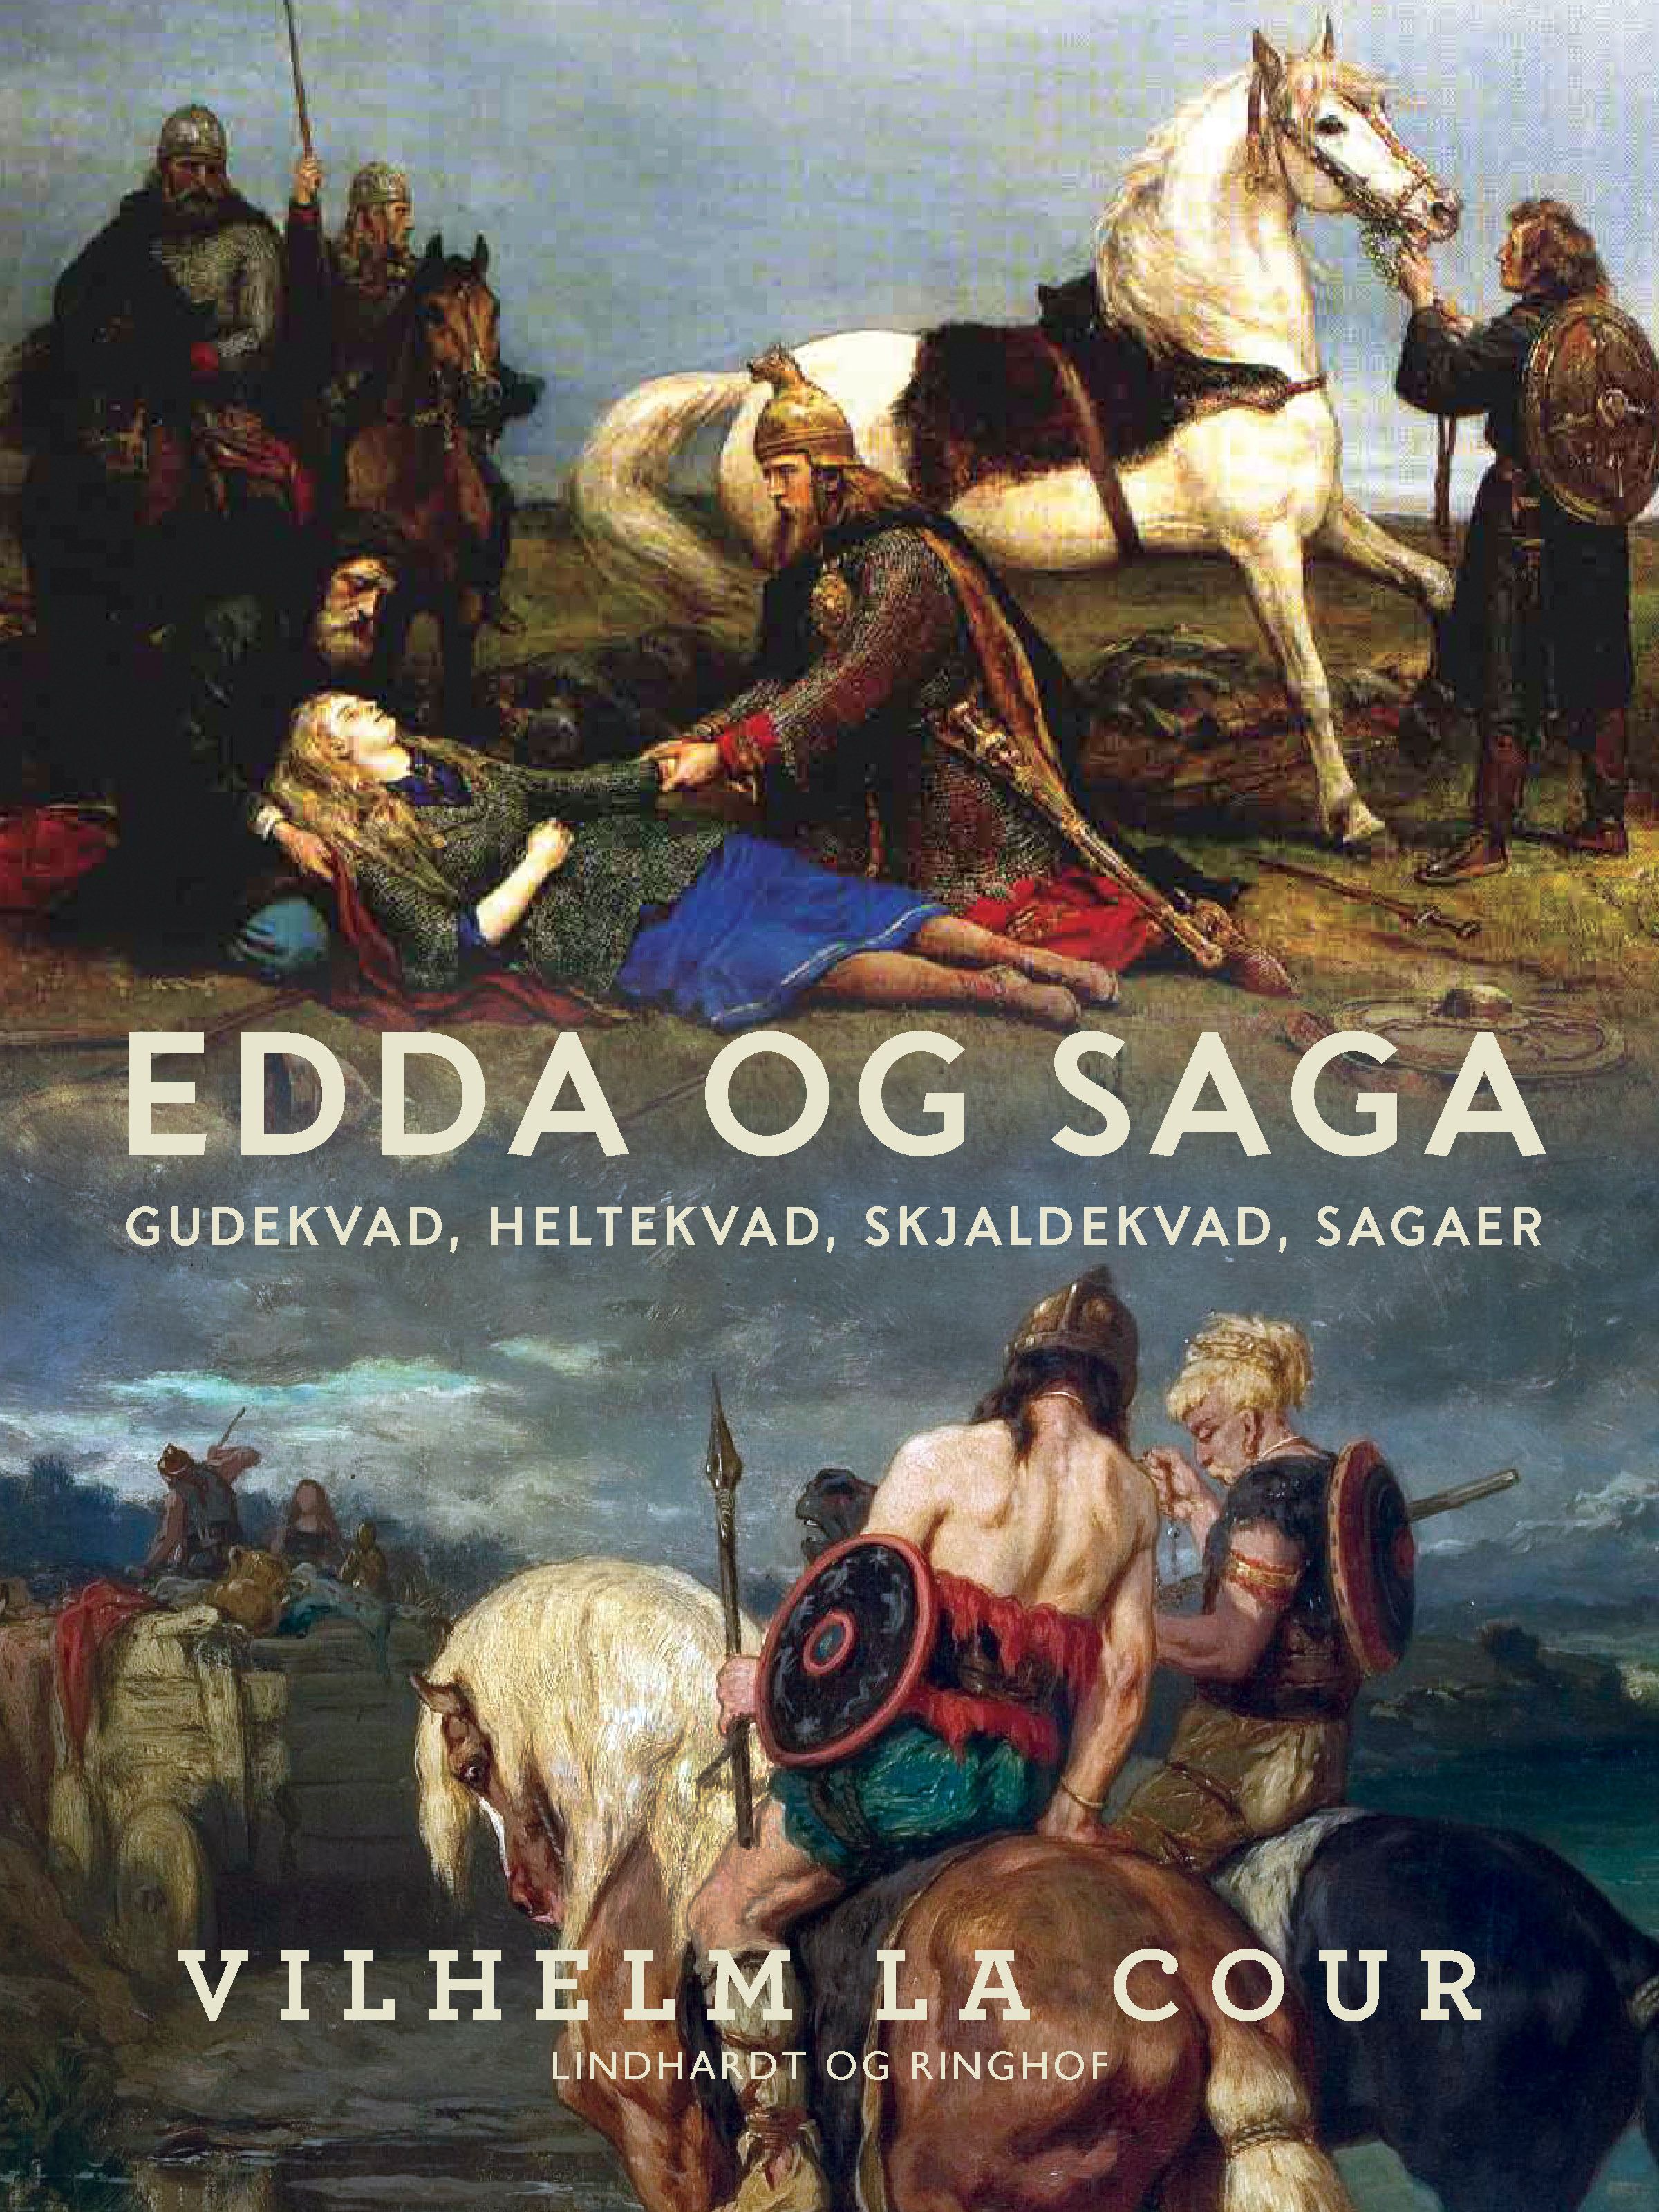 Edda og Saga. Gudekvad, heltekvad, skjaldekvad, sagaer, e-bok av Vilhelm La Cour